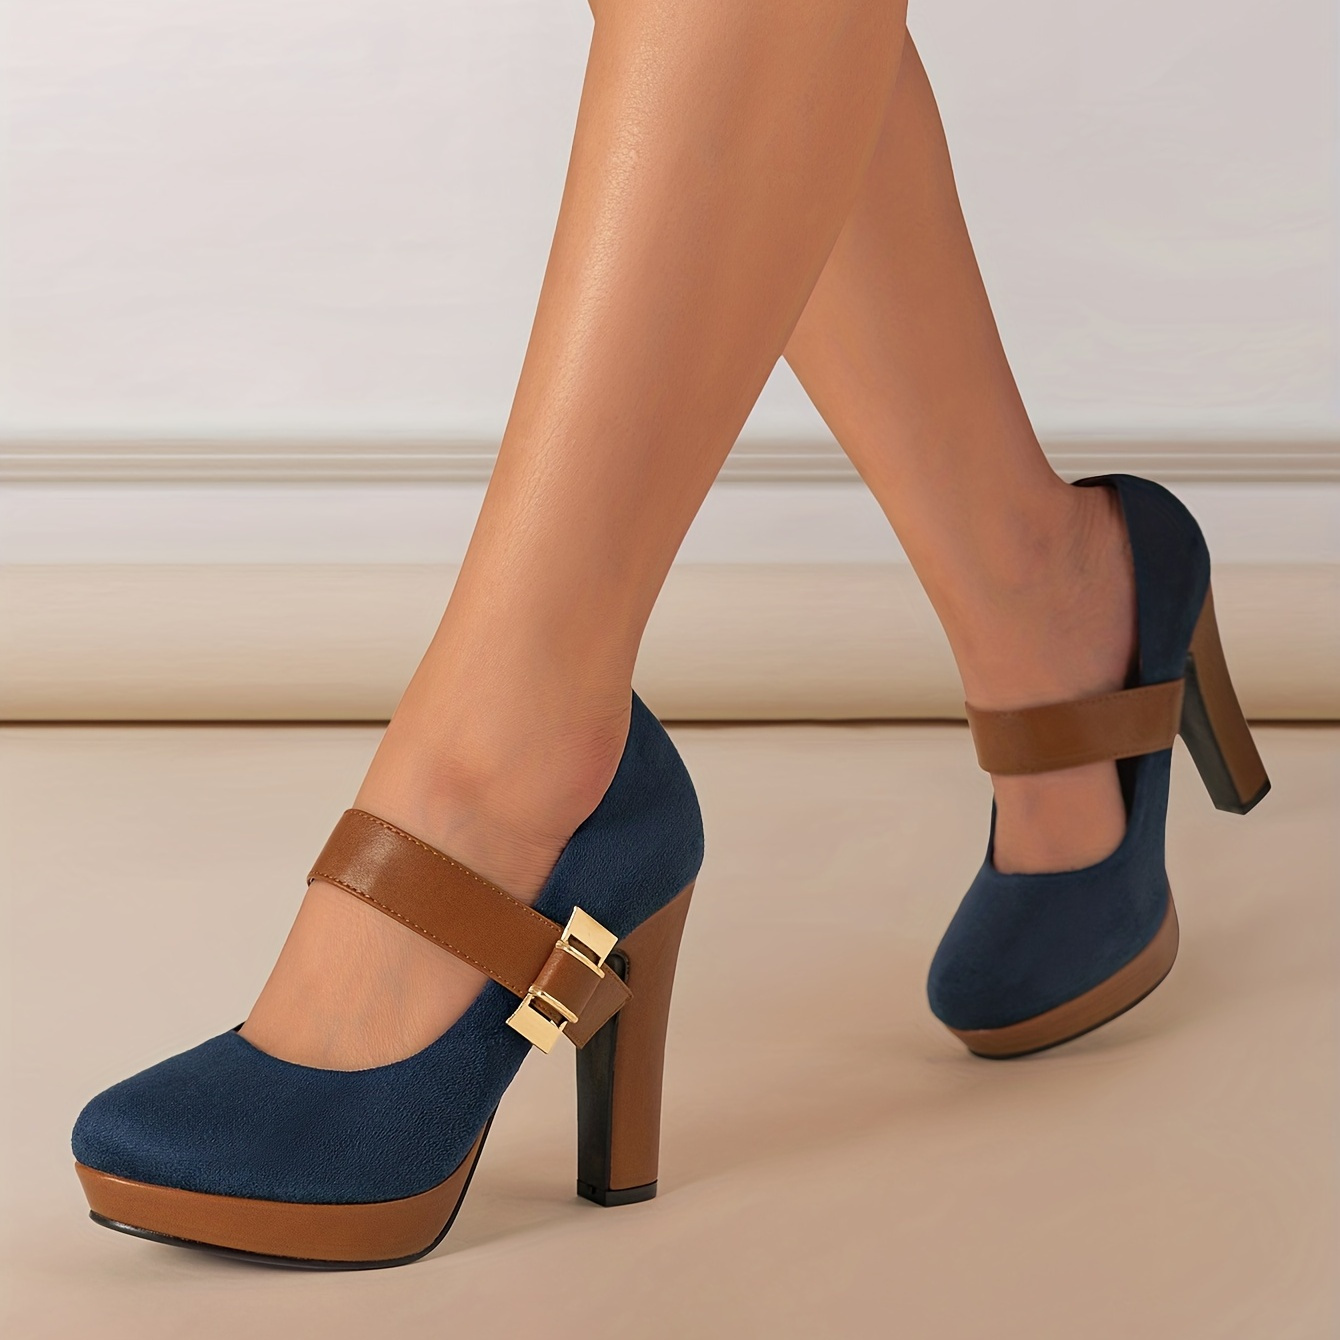 Heels For Women - Buy Heels For Women Online Starting at Just